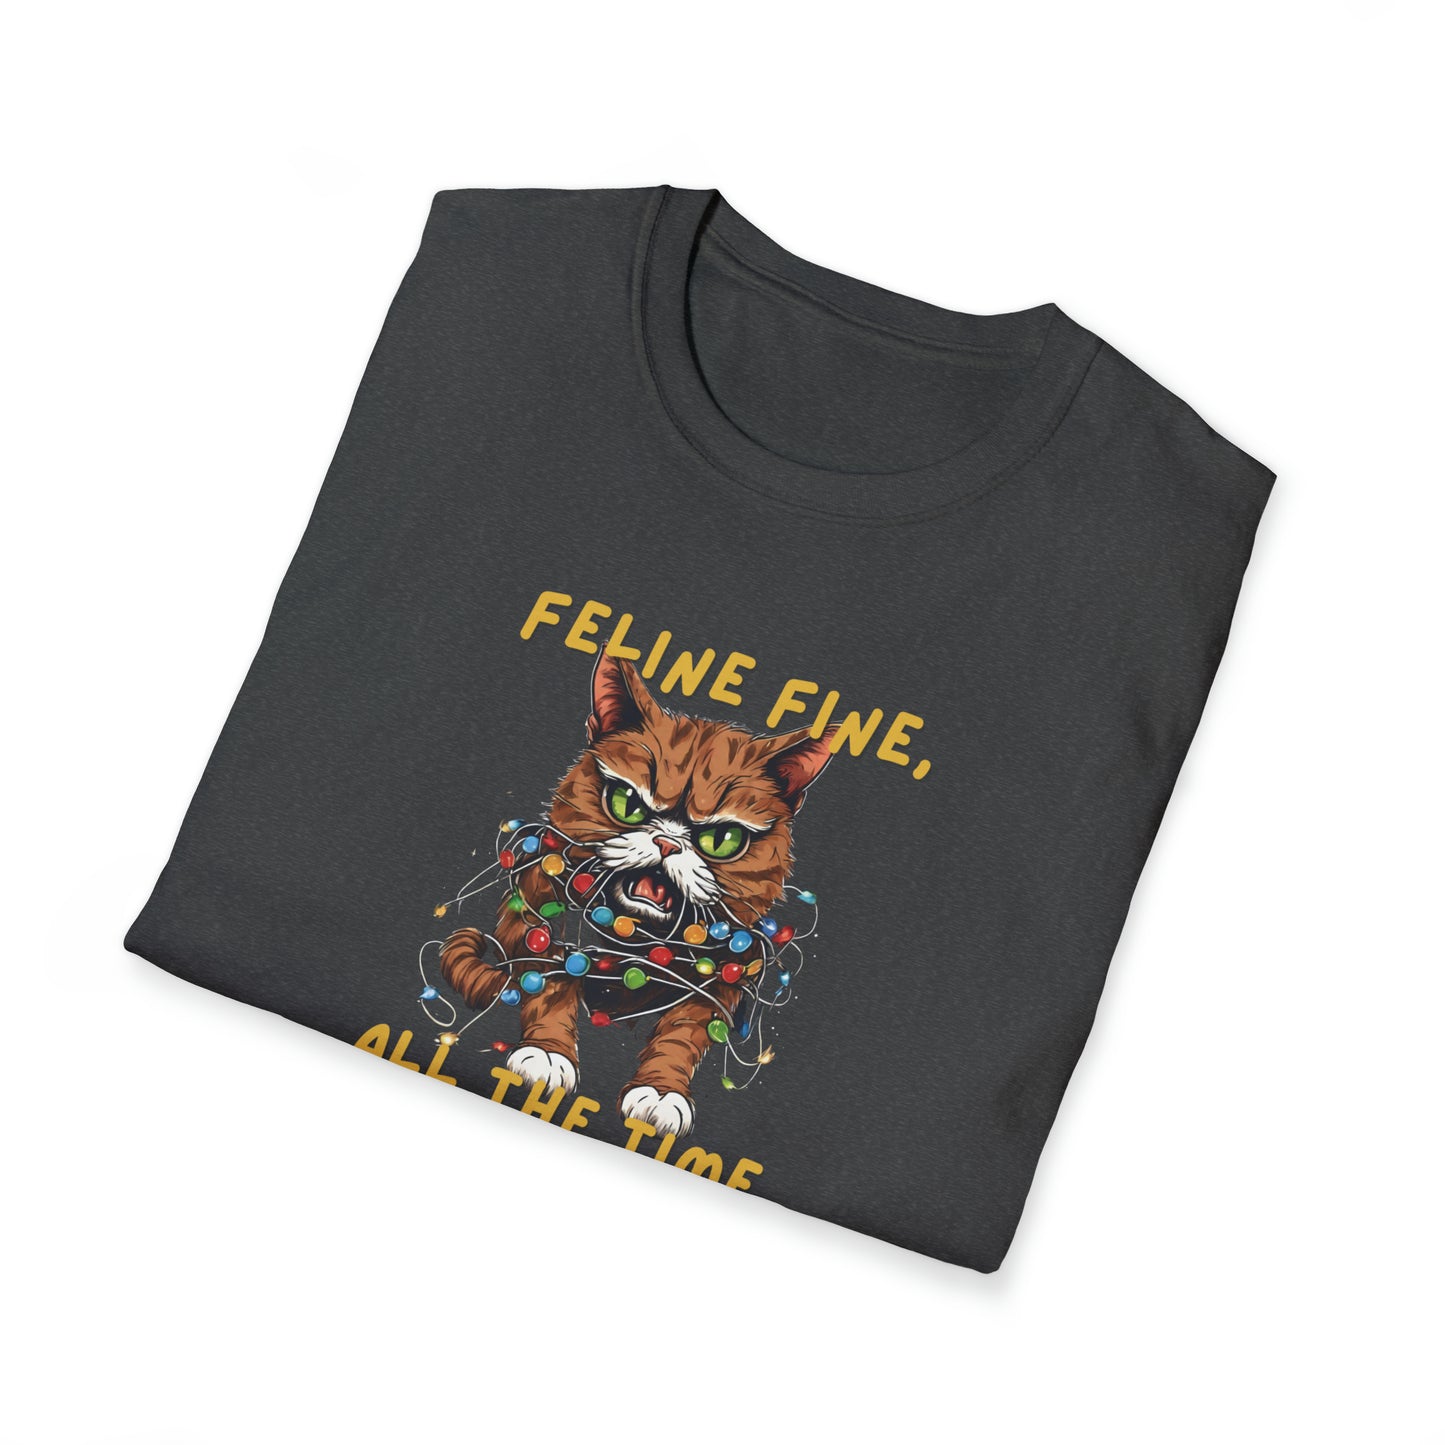 Feline Fine, All The Time T-Shirt, Funny Christmas Tshirt, Cat Christmas Shirt